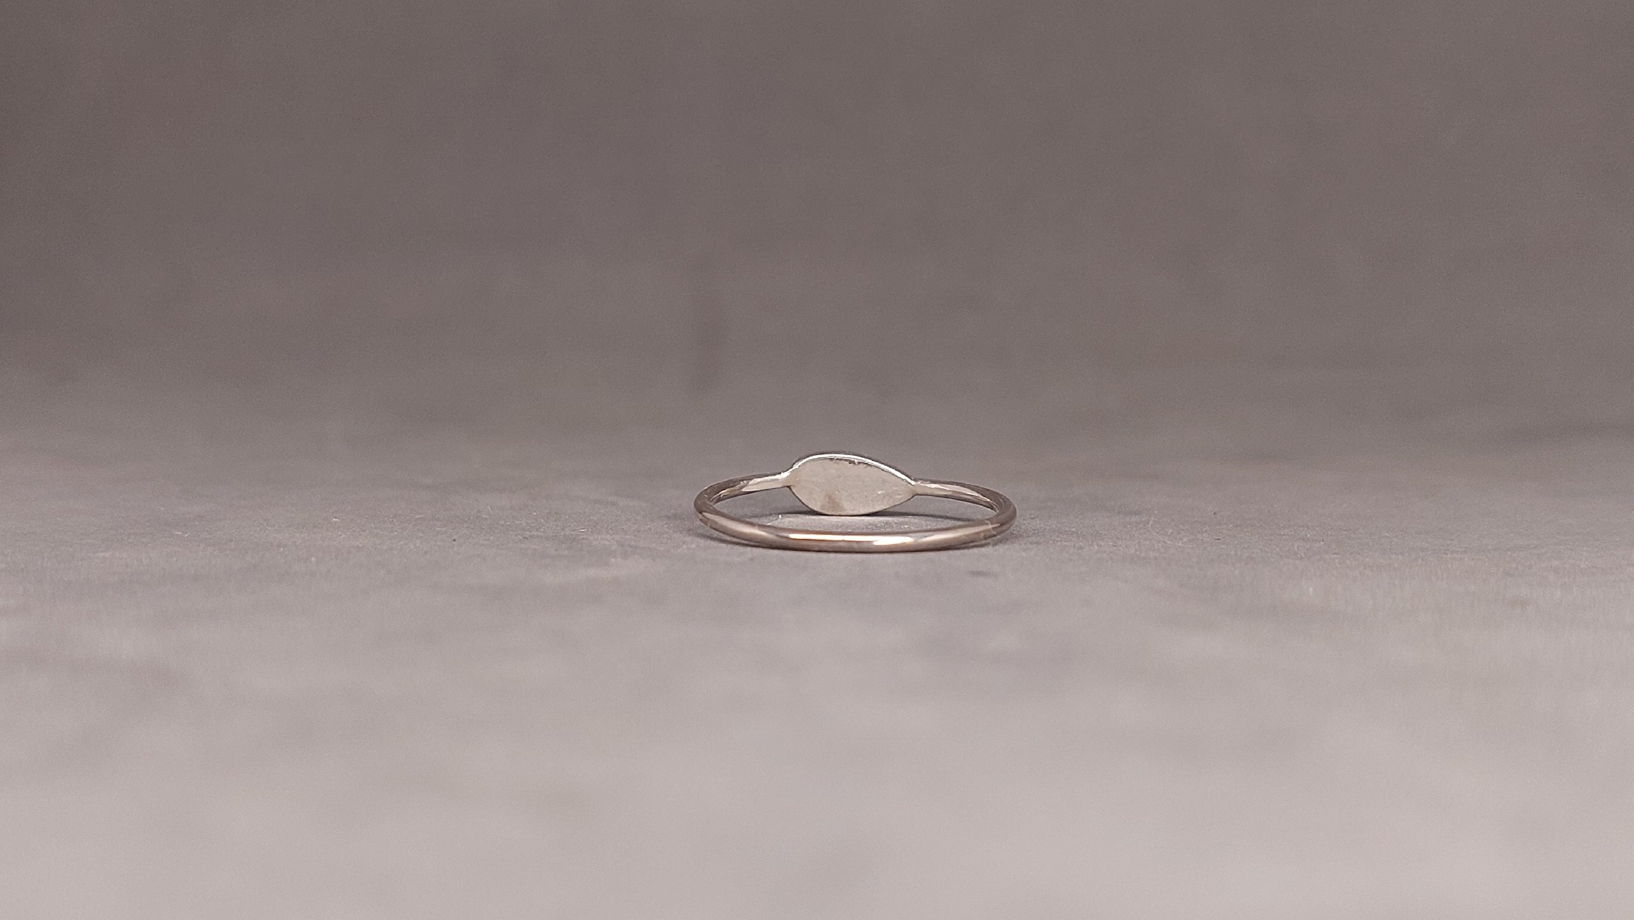 Тонкое кольцо с черным турмалином "Семечко", размер 16,5 - 17